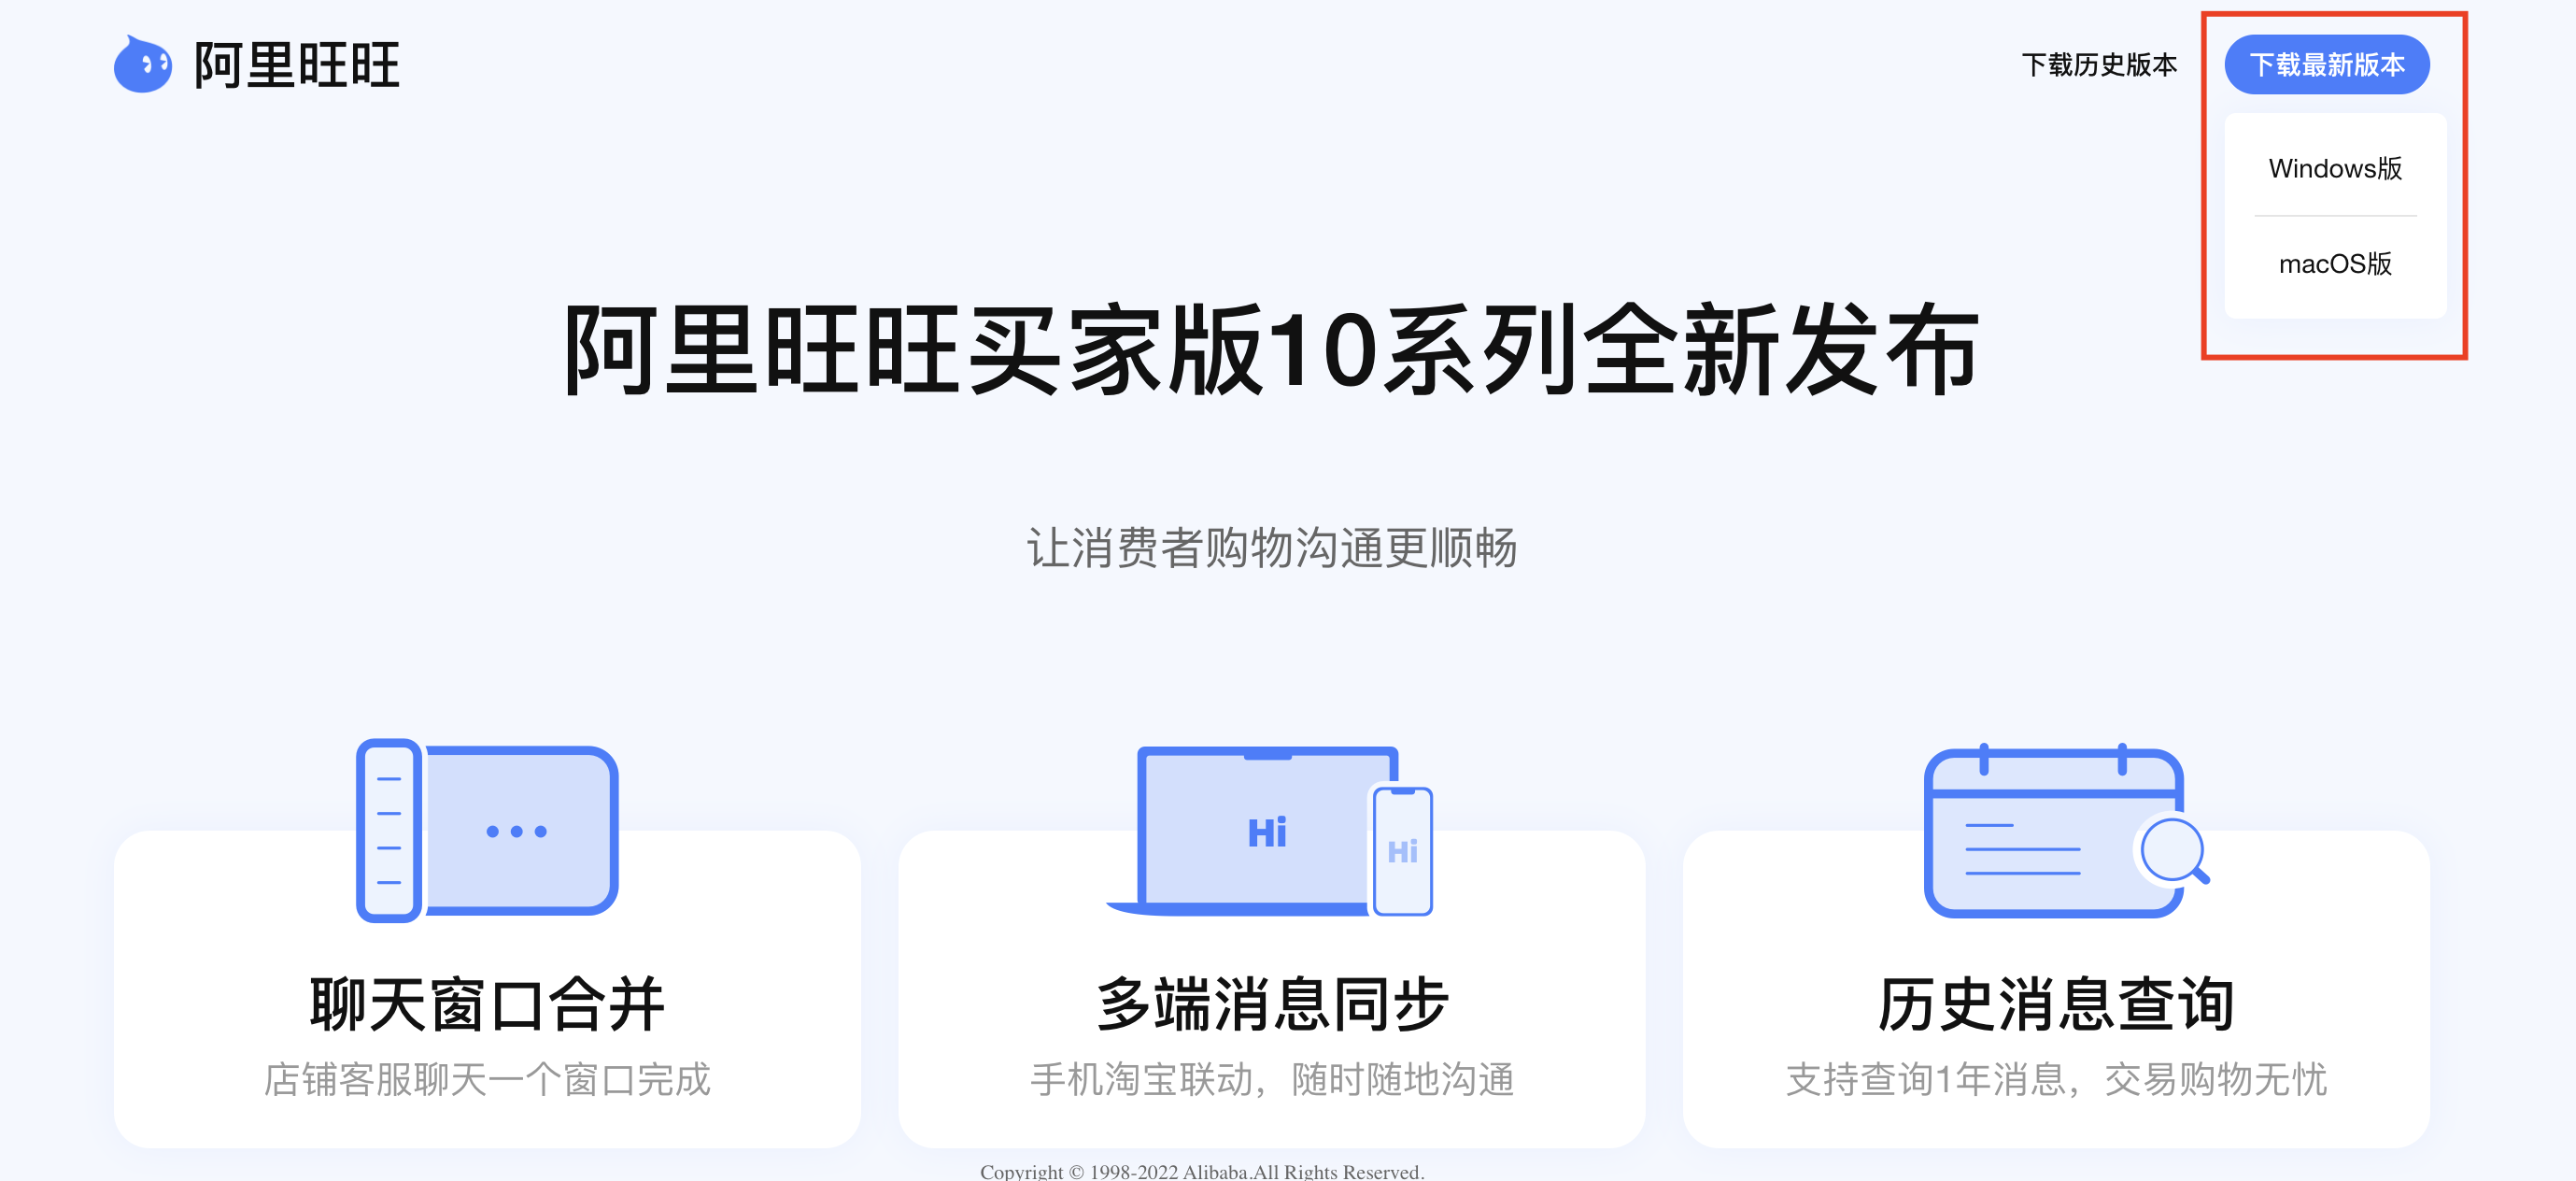 Download và tải Aliwangwang về máy